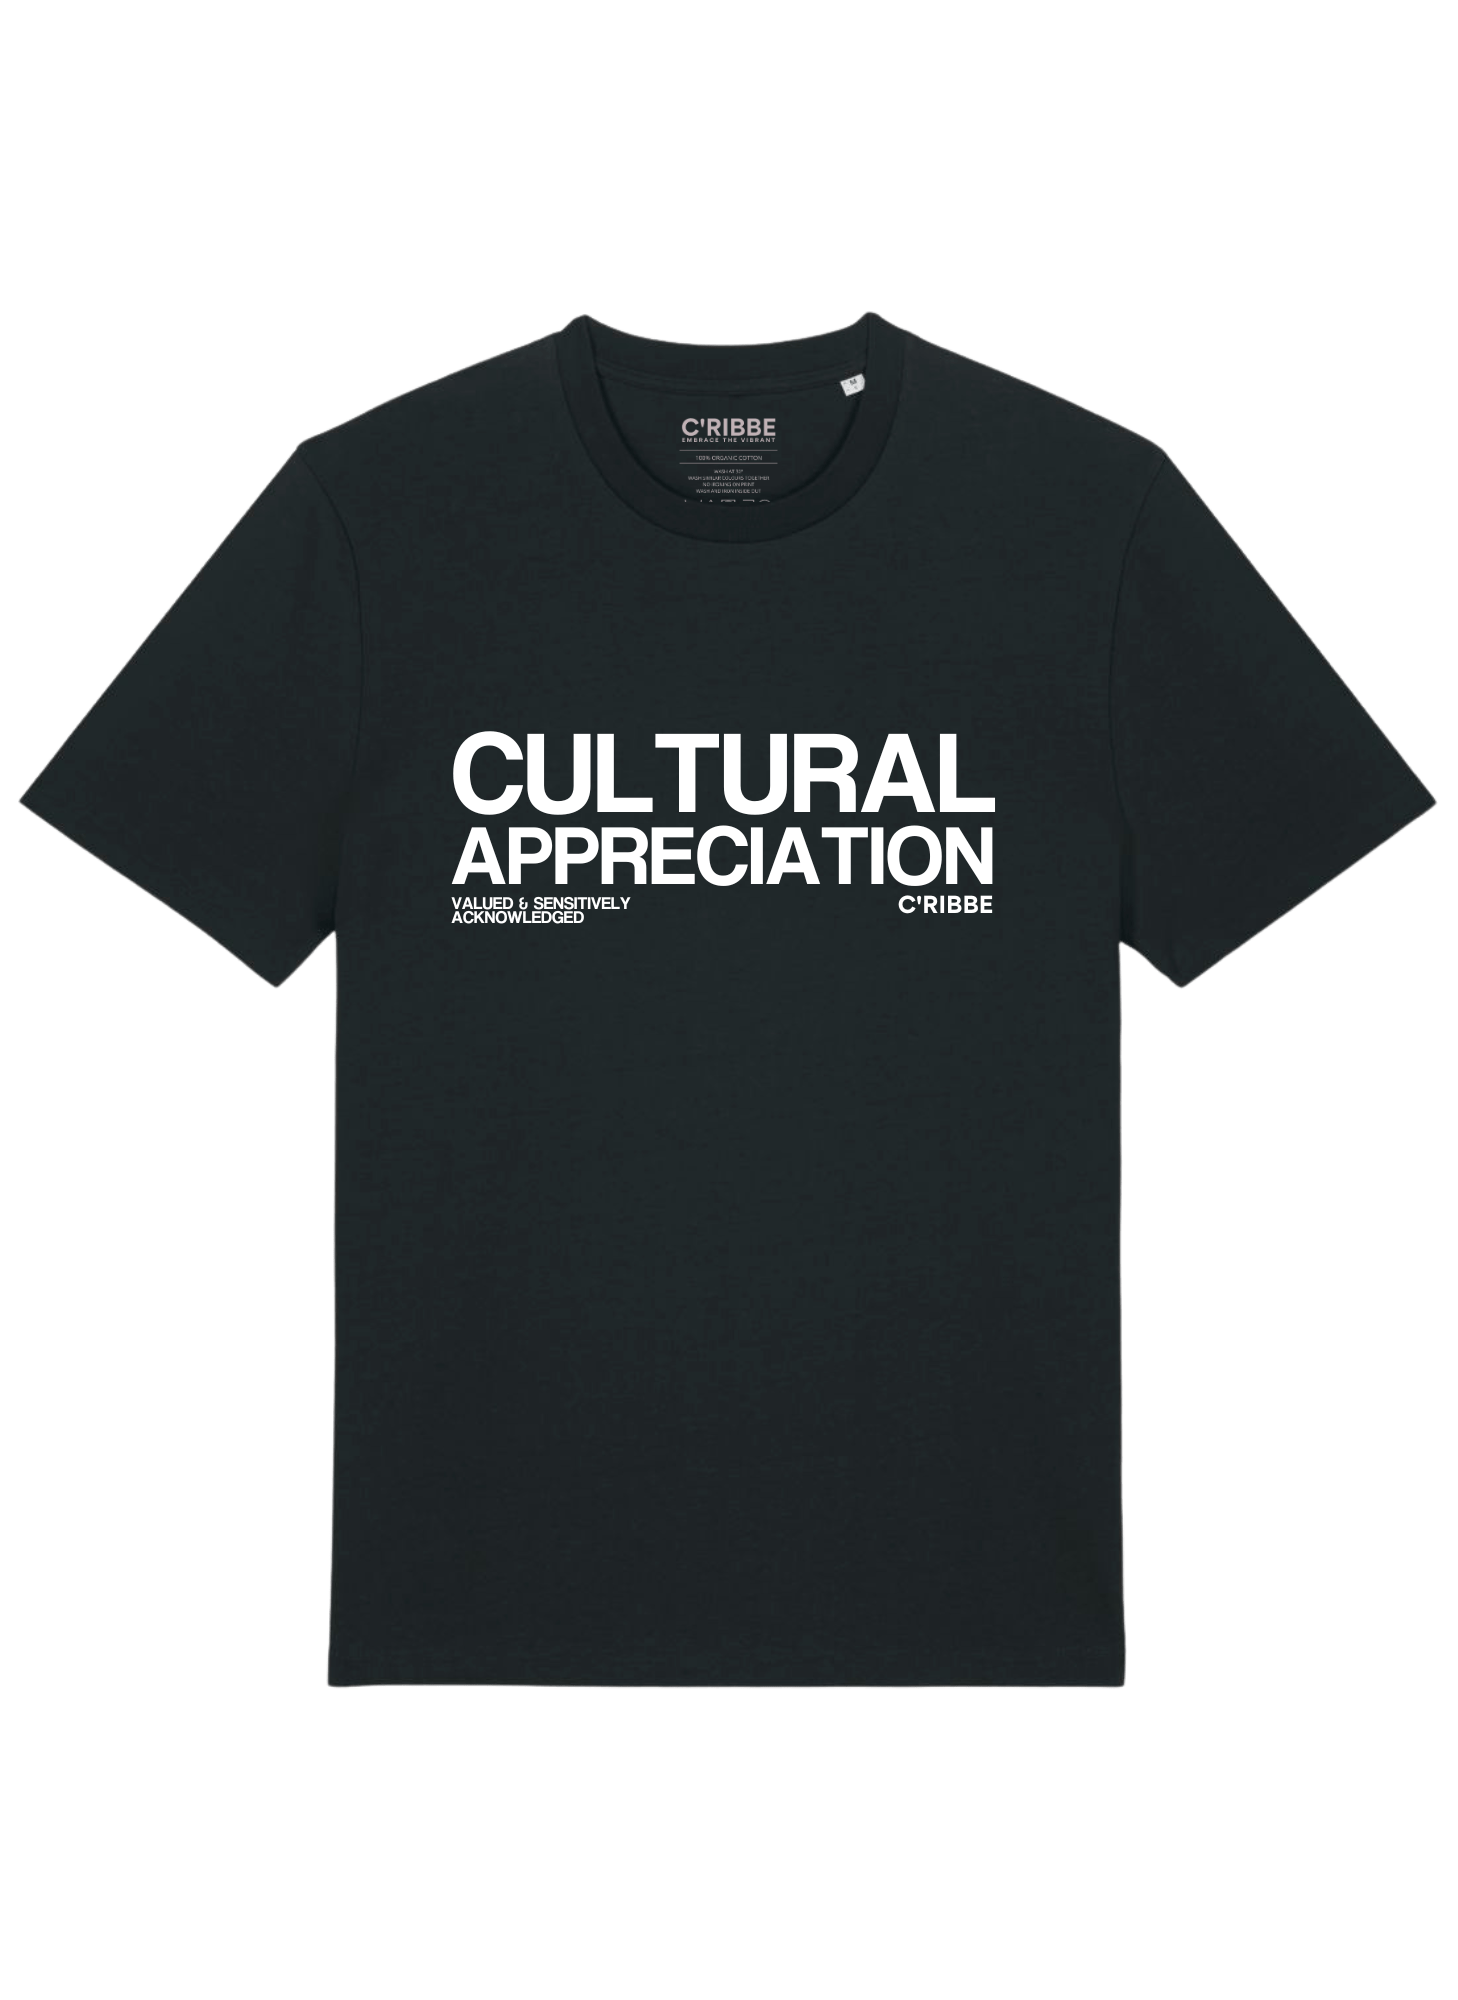 CULTURAL APPRECIATION Statement Print T-Shirt, Black